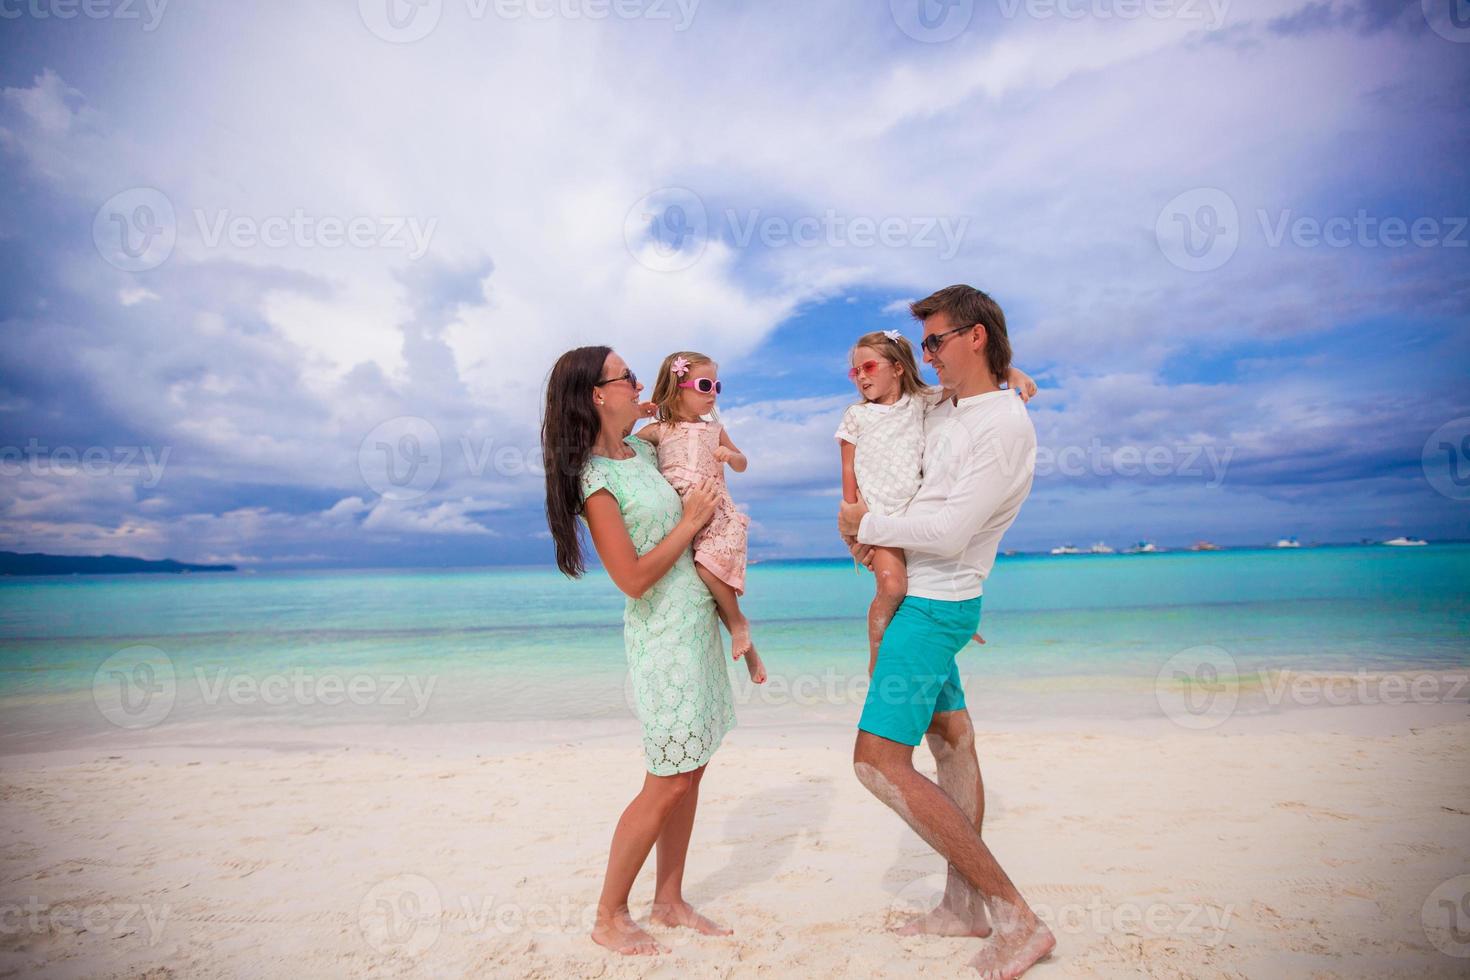 jovem linda família com dois filhos se olhando em férias tropicais foto